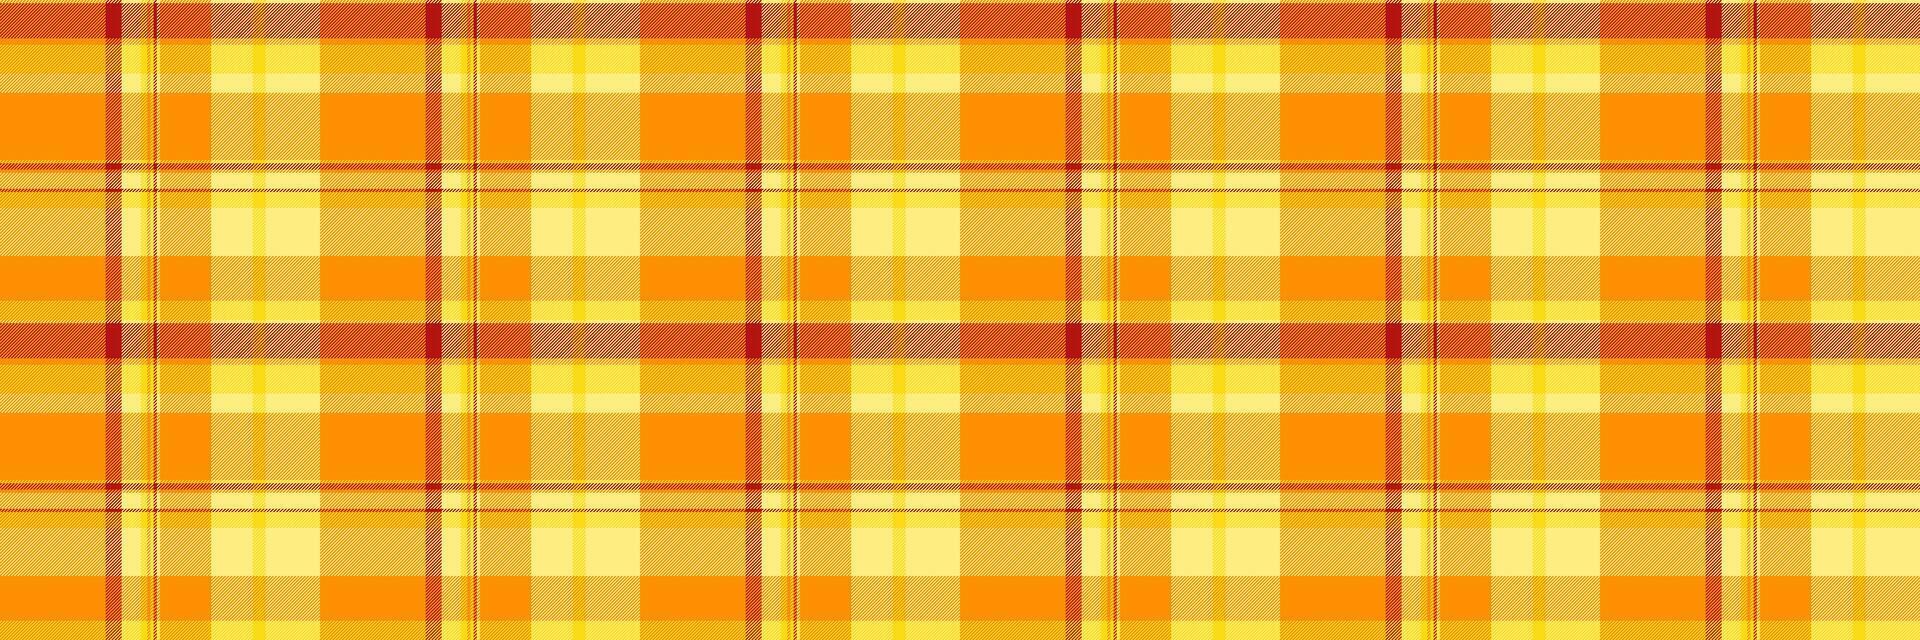 Paket Textil- Hintergrund Plaid, Satin- Textur Stoff nahtlos. wiederholen Tartan Muster prüfen im dunkel Orange und Gelb Farben. vektor